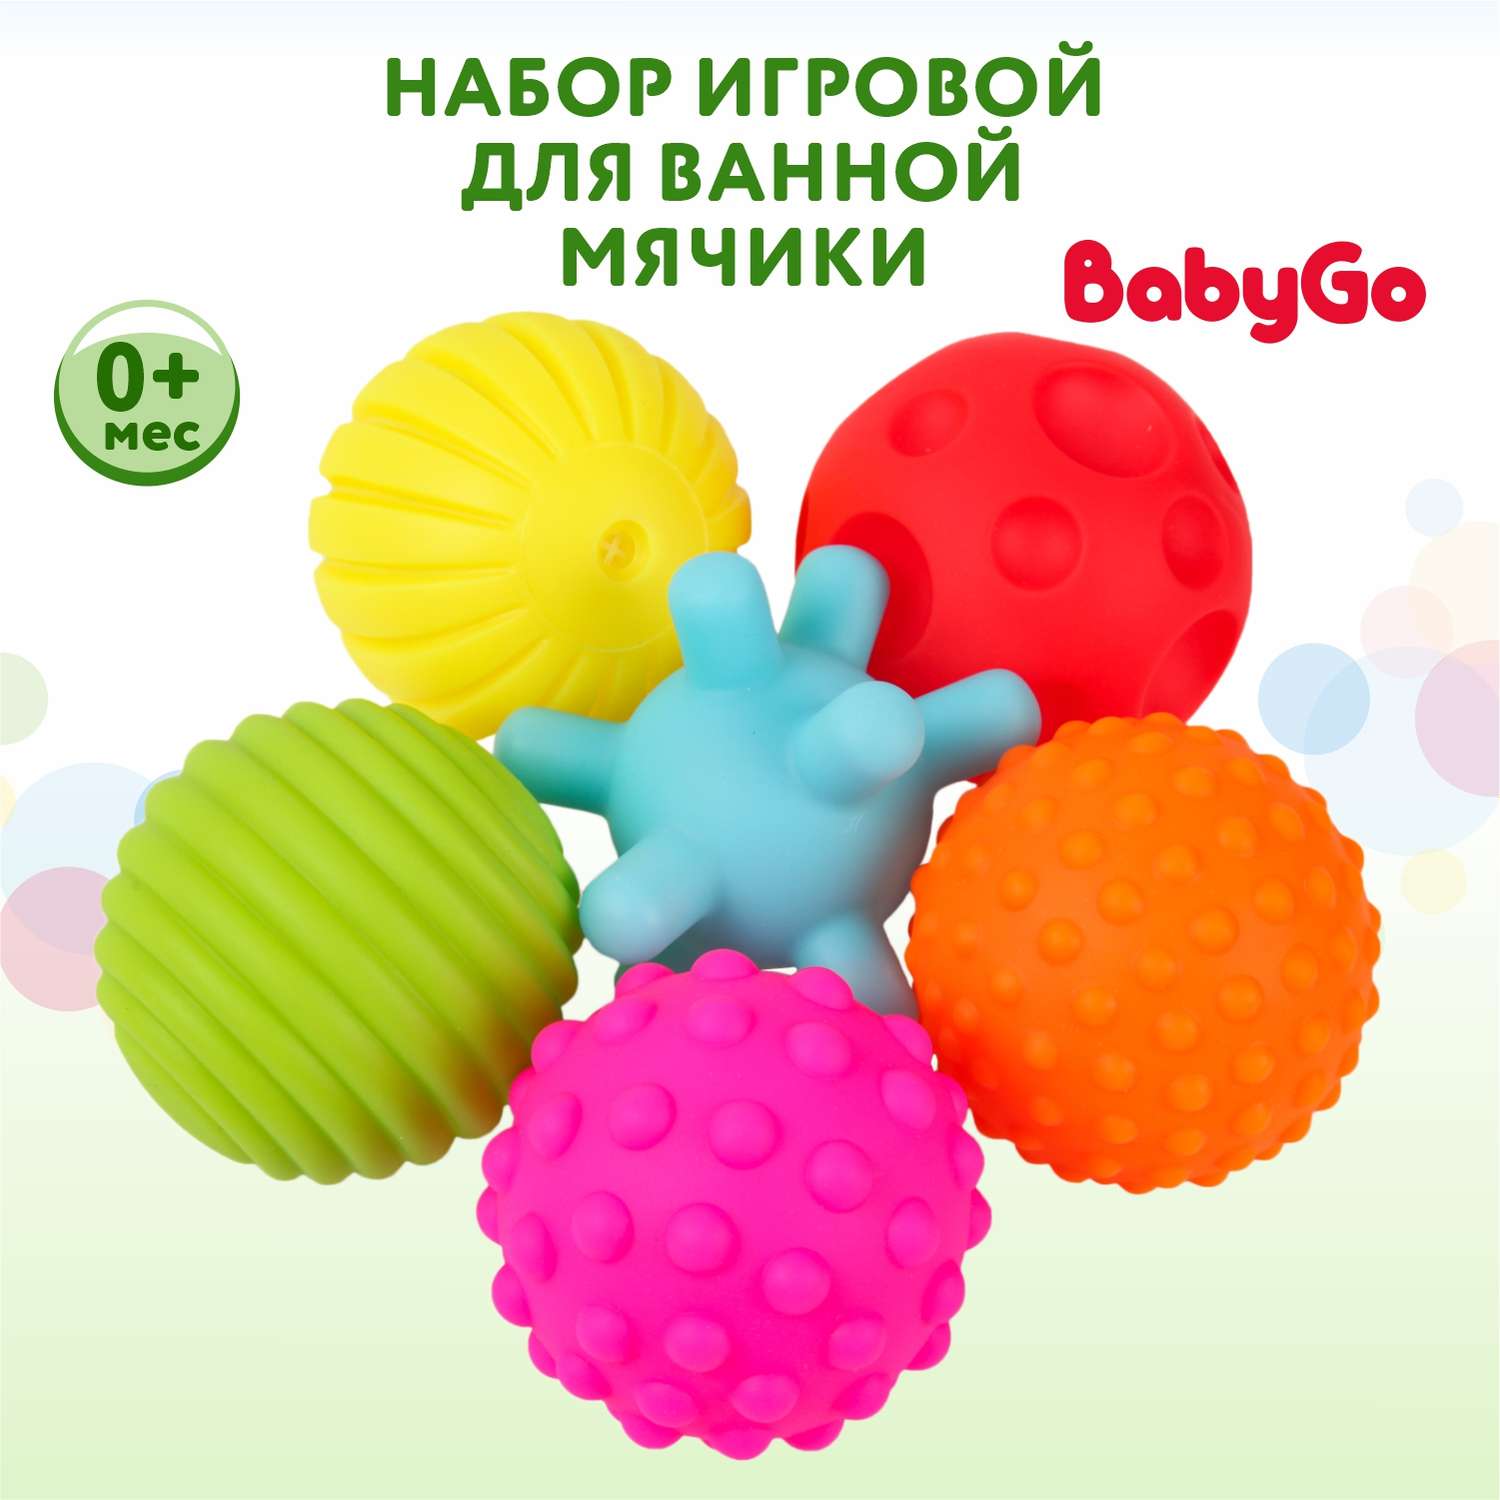 Набор игровой Baby Go для ванной Мячики 6шт BLSQ-37 - фото 1